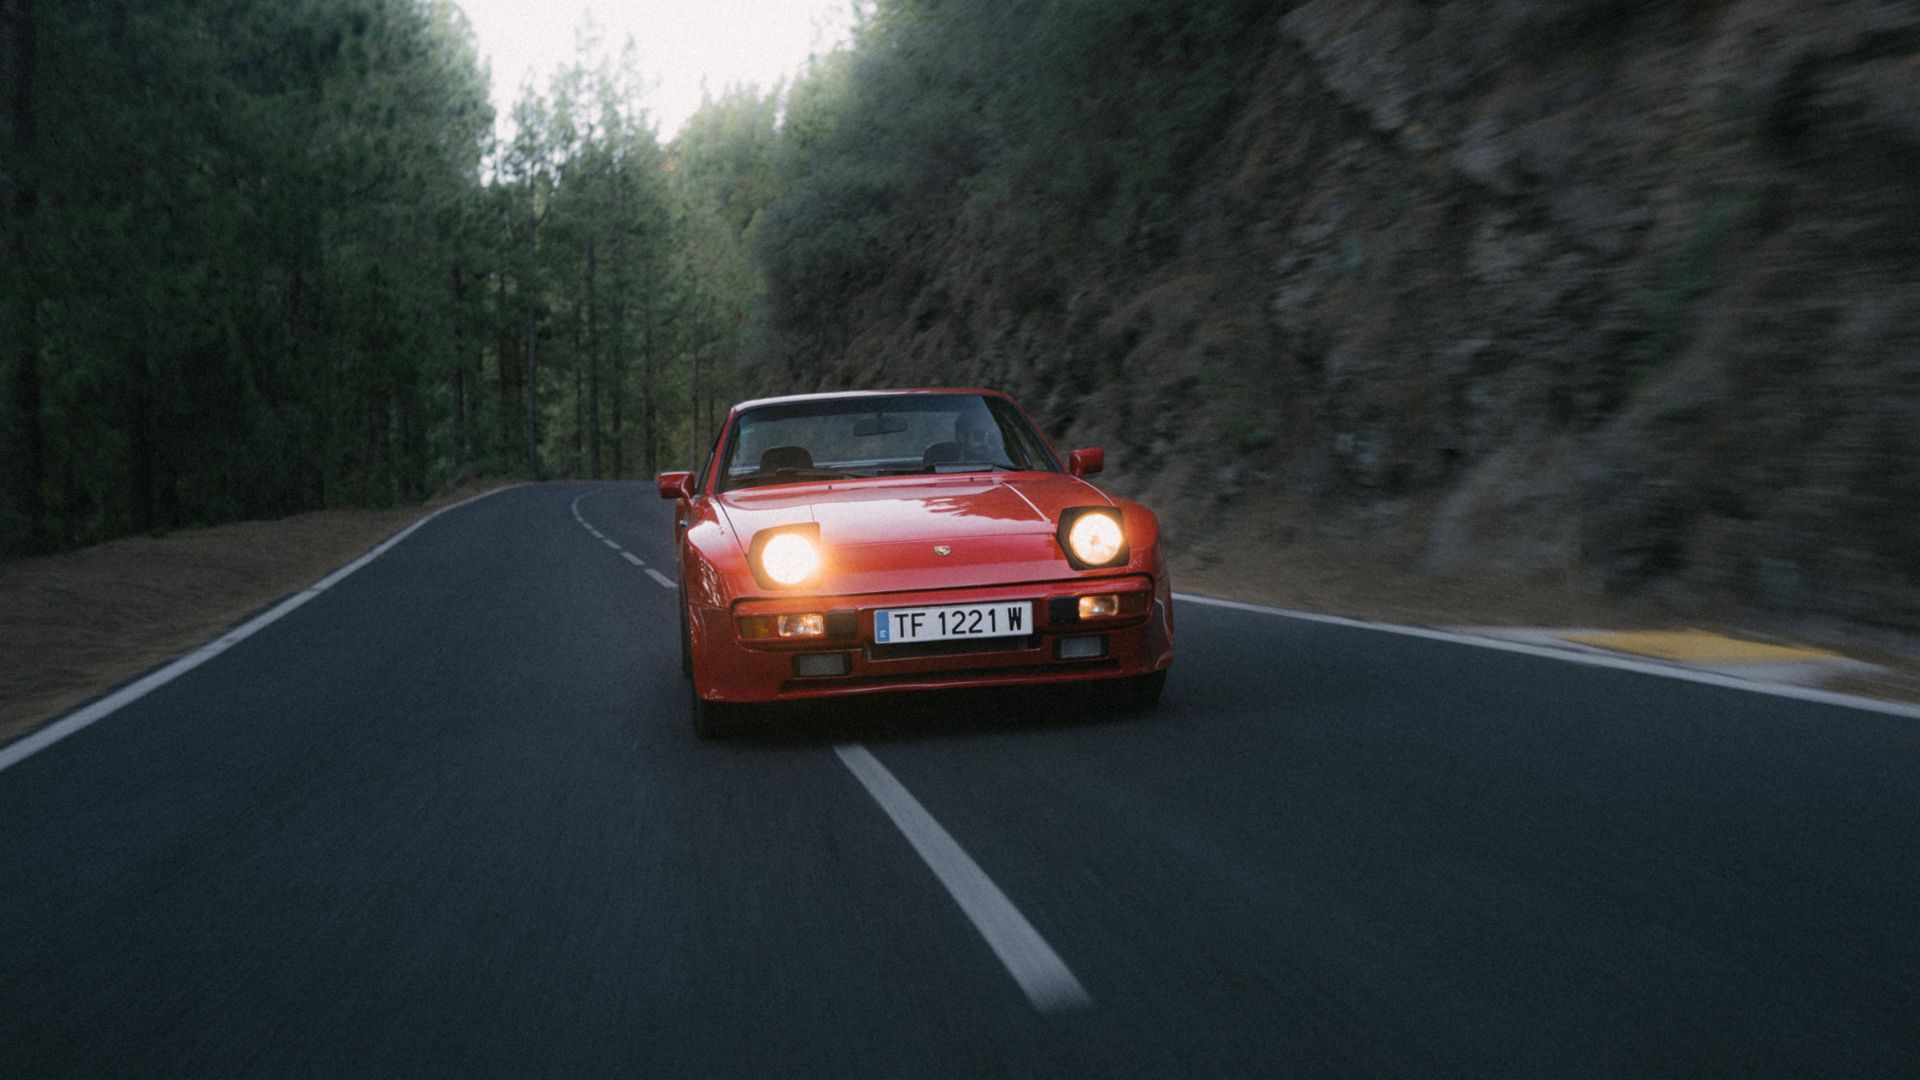 Vista dinámica de un Porsche 944 en tono rojo circulando por una carretera forestal.